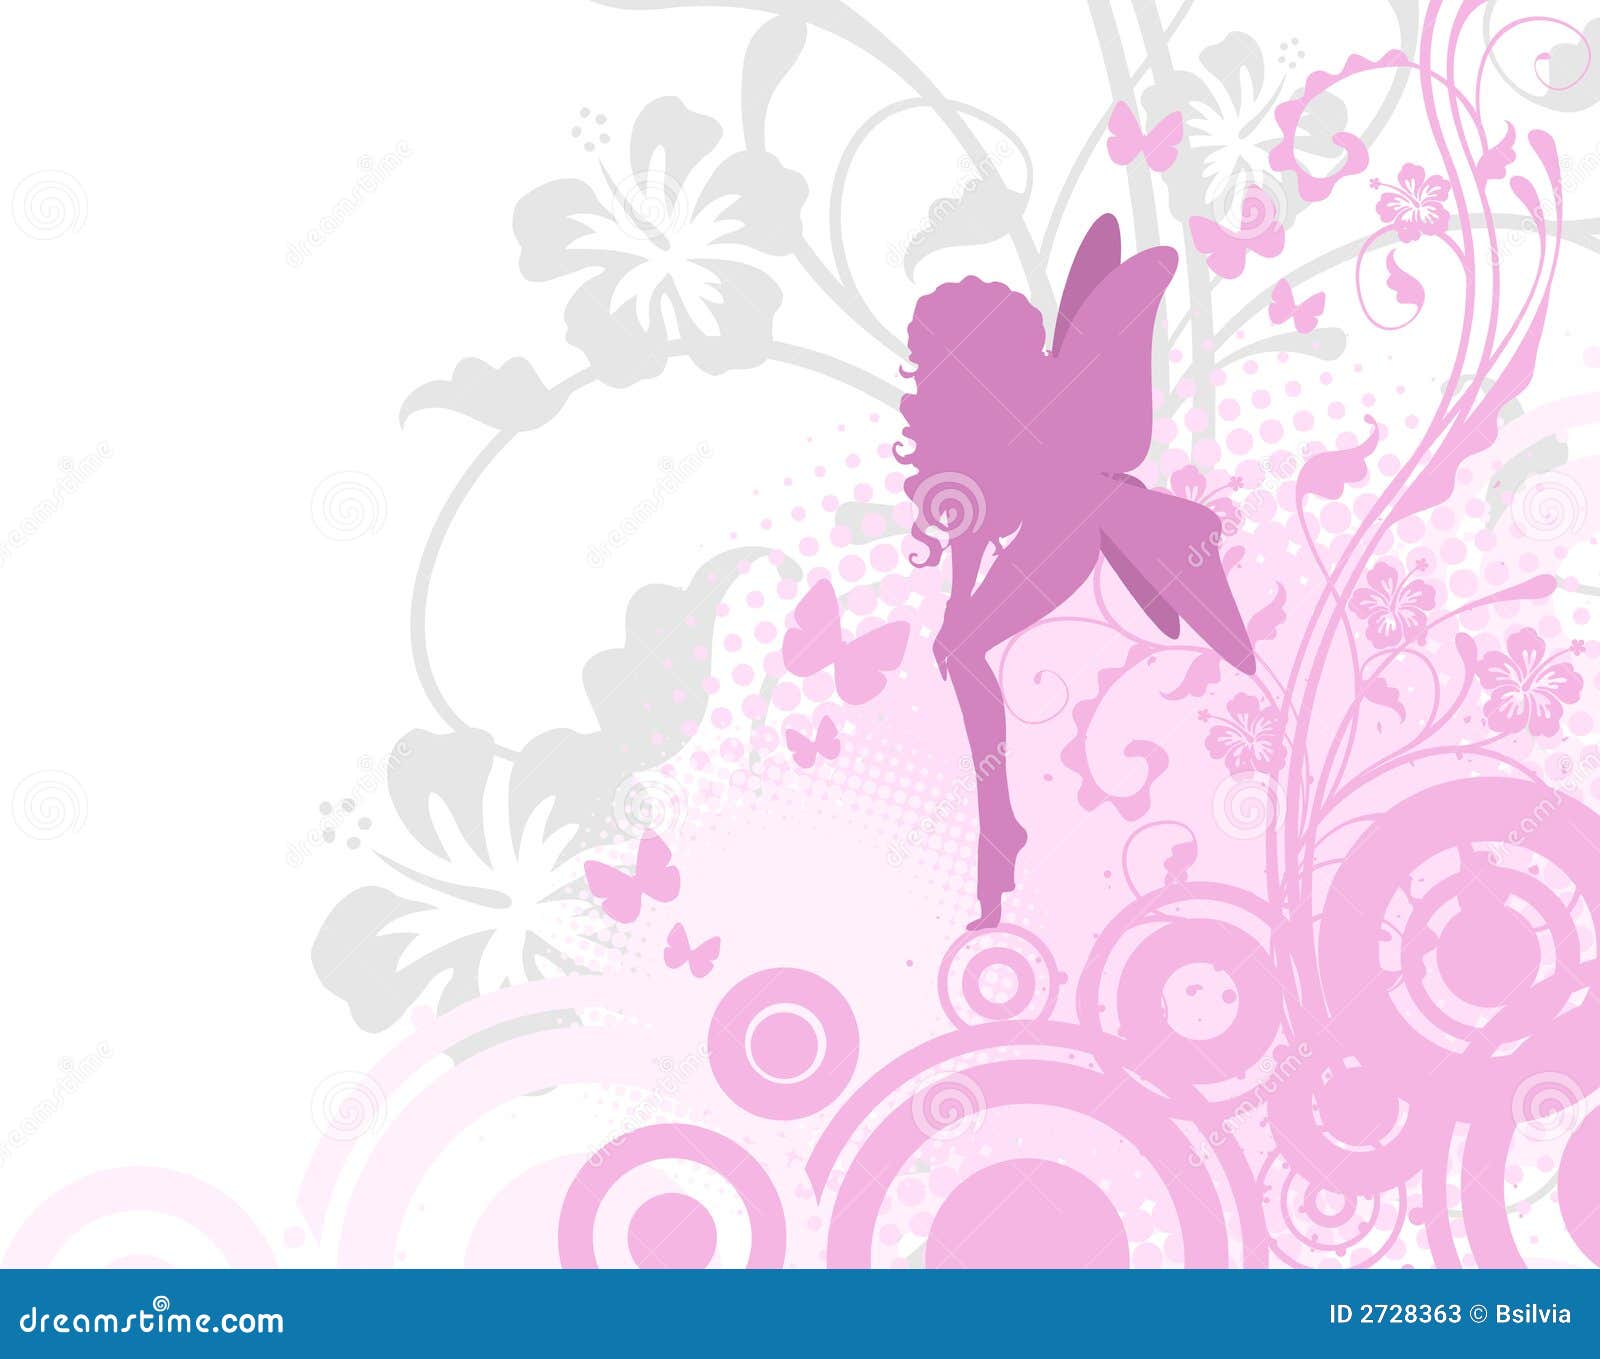 Fairy in pink garden stock vector. Illustration of romance - 2728363